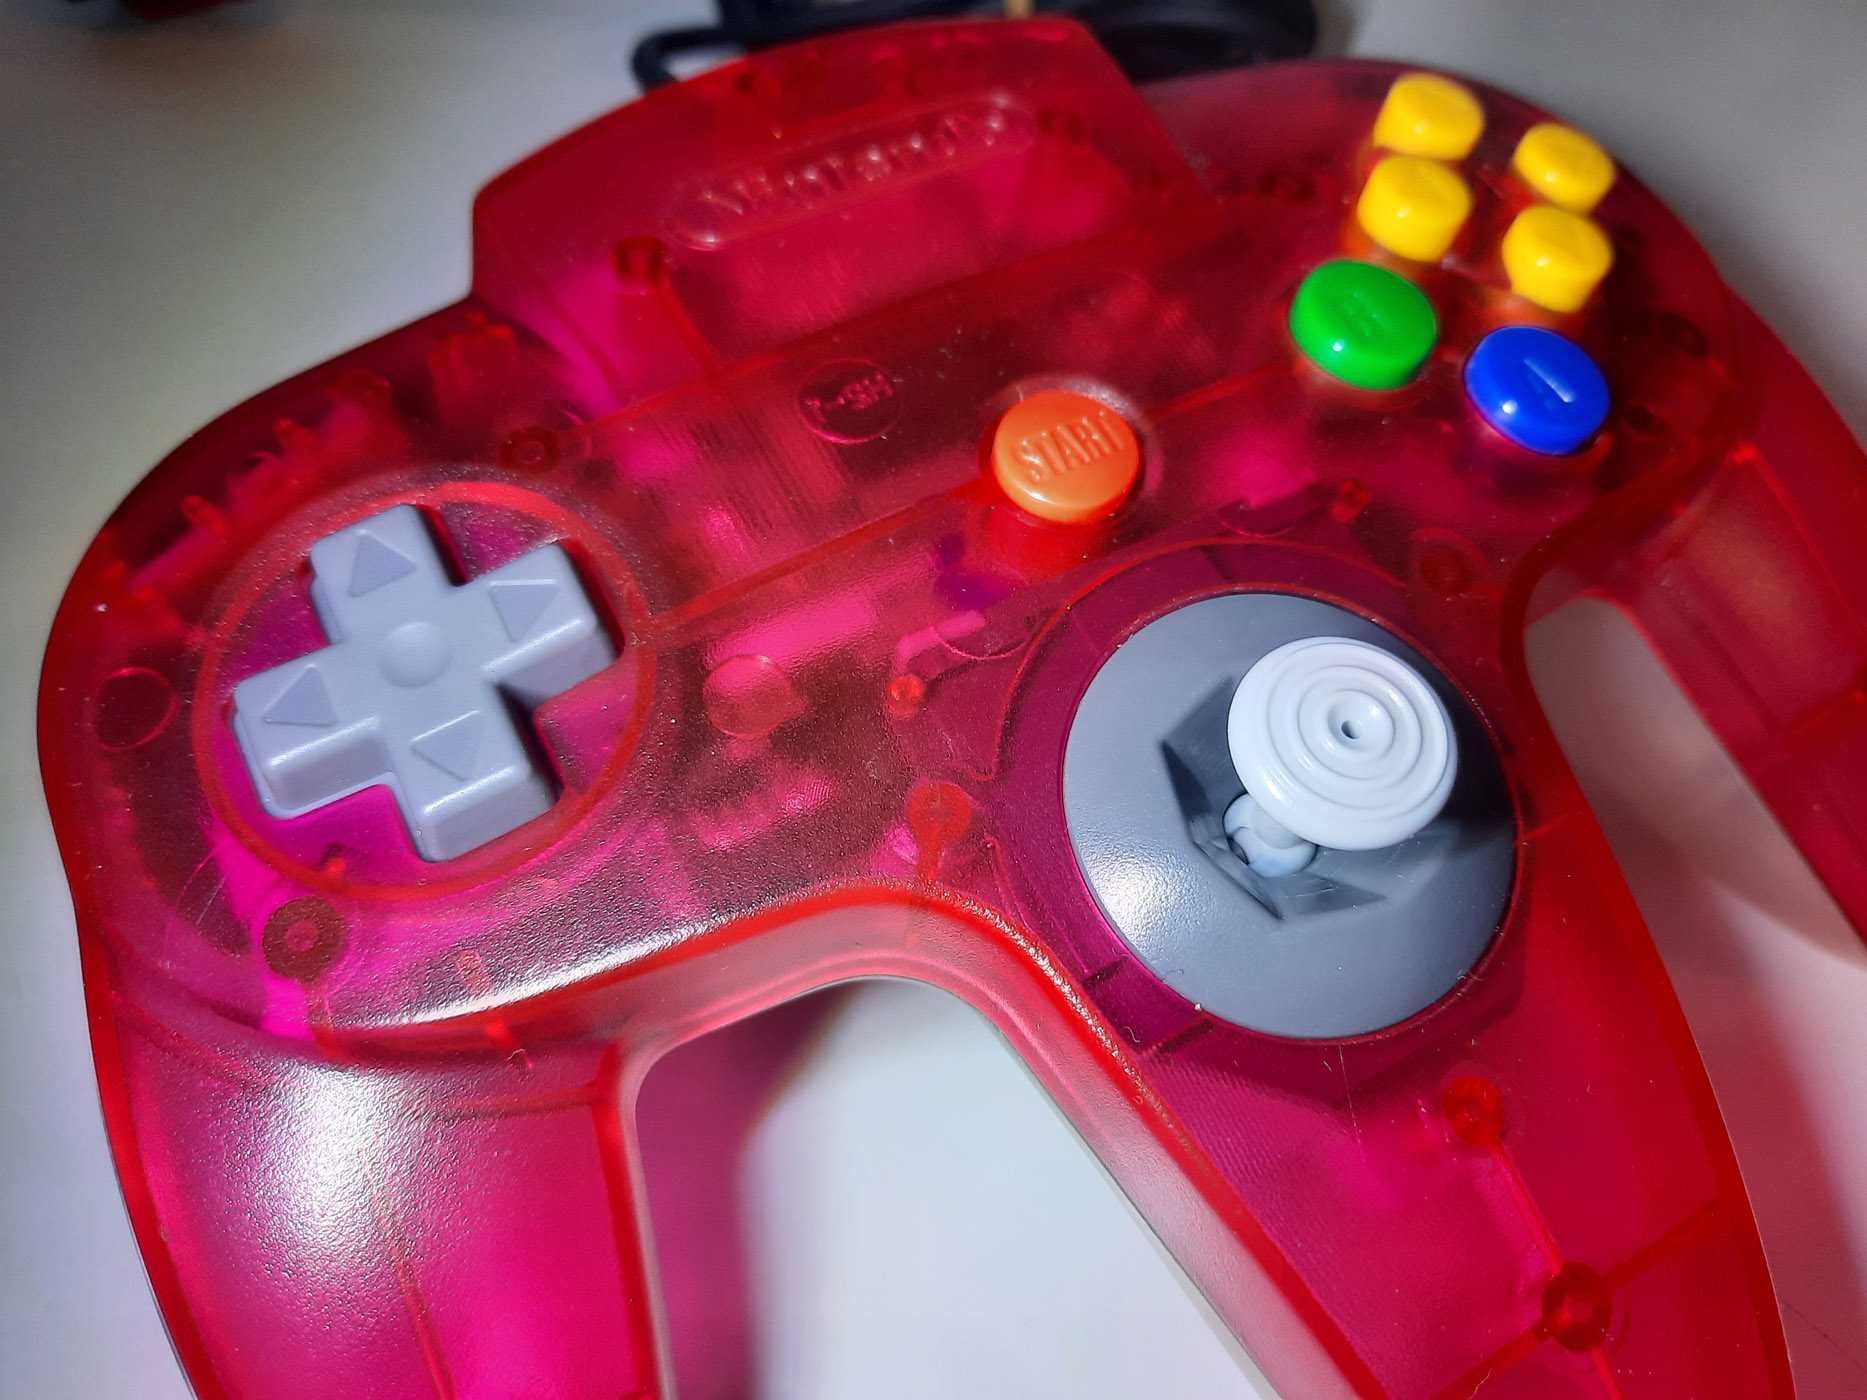 Pad Nintendo 64 / Clear Red (NUS-005)